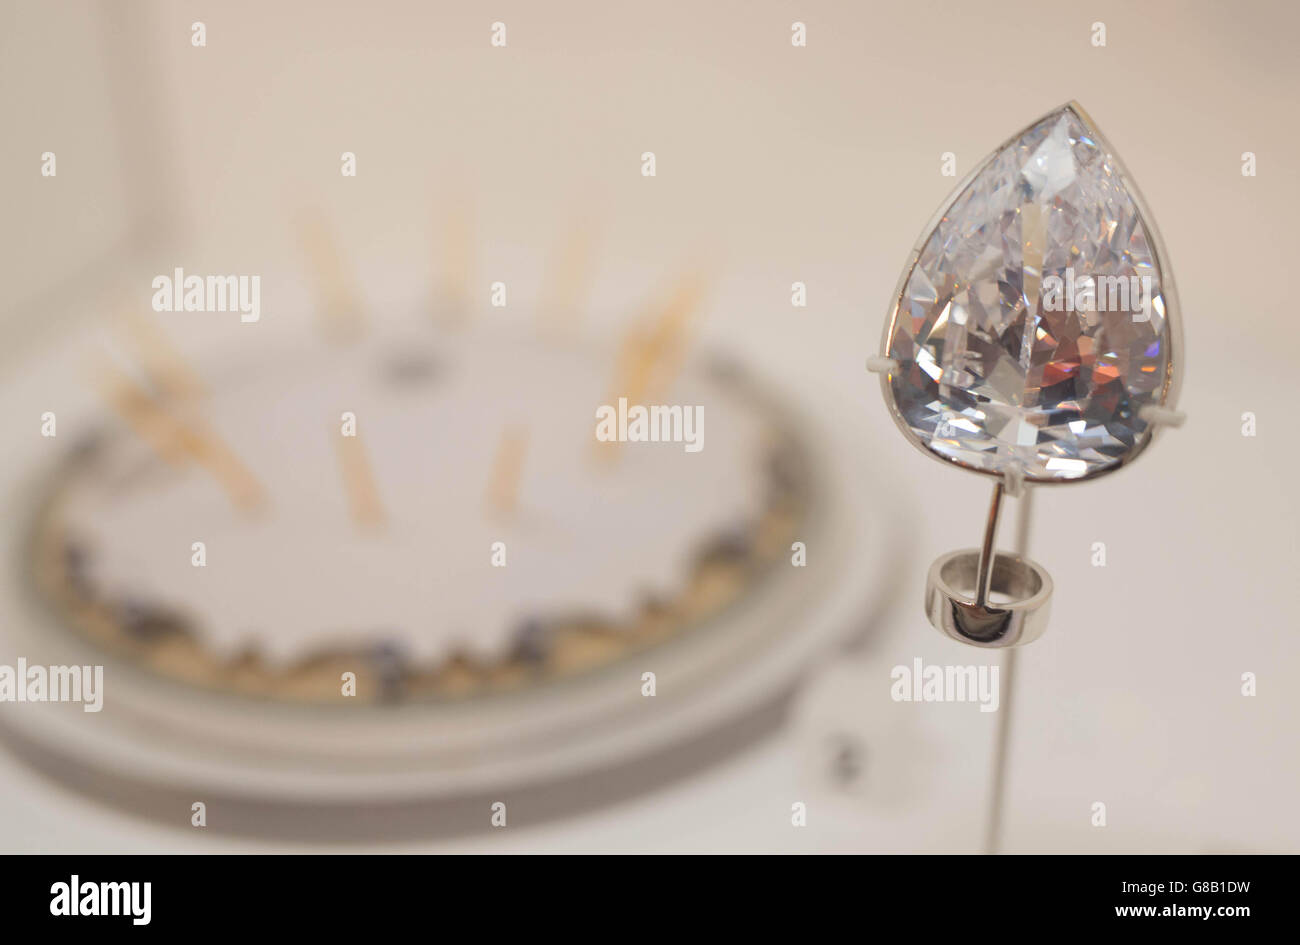 Una réplica del diamante de la Estrella del Milenio, apuntada durante el intento de robo de la cúpula del Milenio en 2000, que está en exhibición como parte de la exposición descubierta del Museo del crimen en el Museo de Londres, abierta al público el viernes. Foto de stock